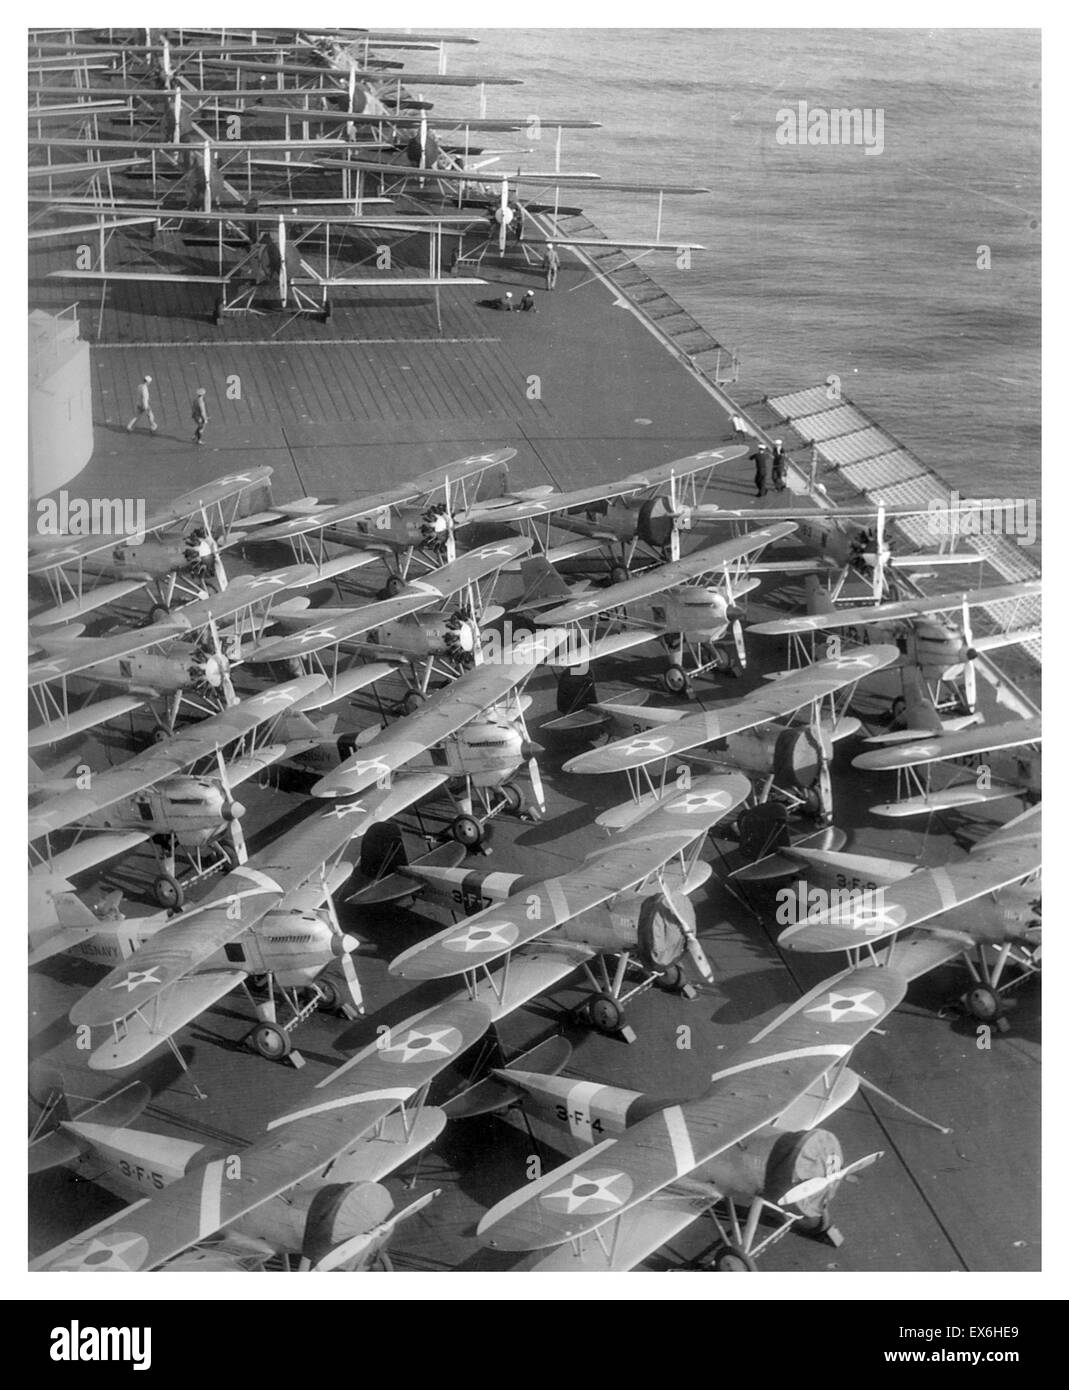 F3B-1 (im Vordergrund), F6C-3 Hawk (Mitte) und T4M-1 (im Hintergrund) Flugzeuge auf dem Flugdeck ein amerikanischer Flugzeugträger USS Lexington, 1929 Stockfoto